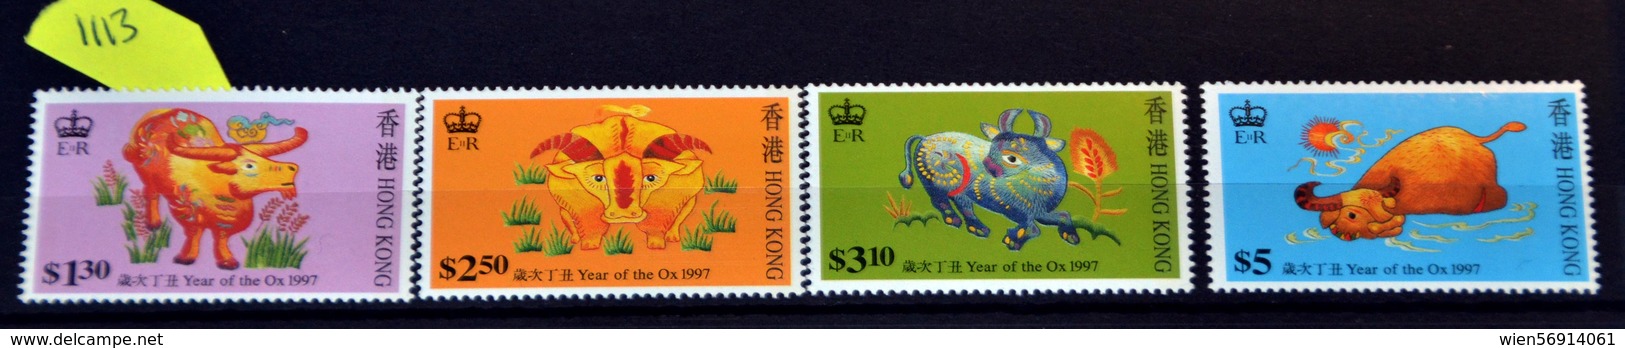 1113 China Hong Kong - Unused Stamps